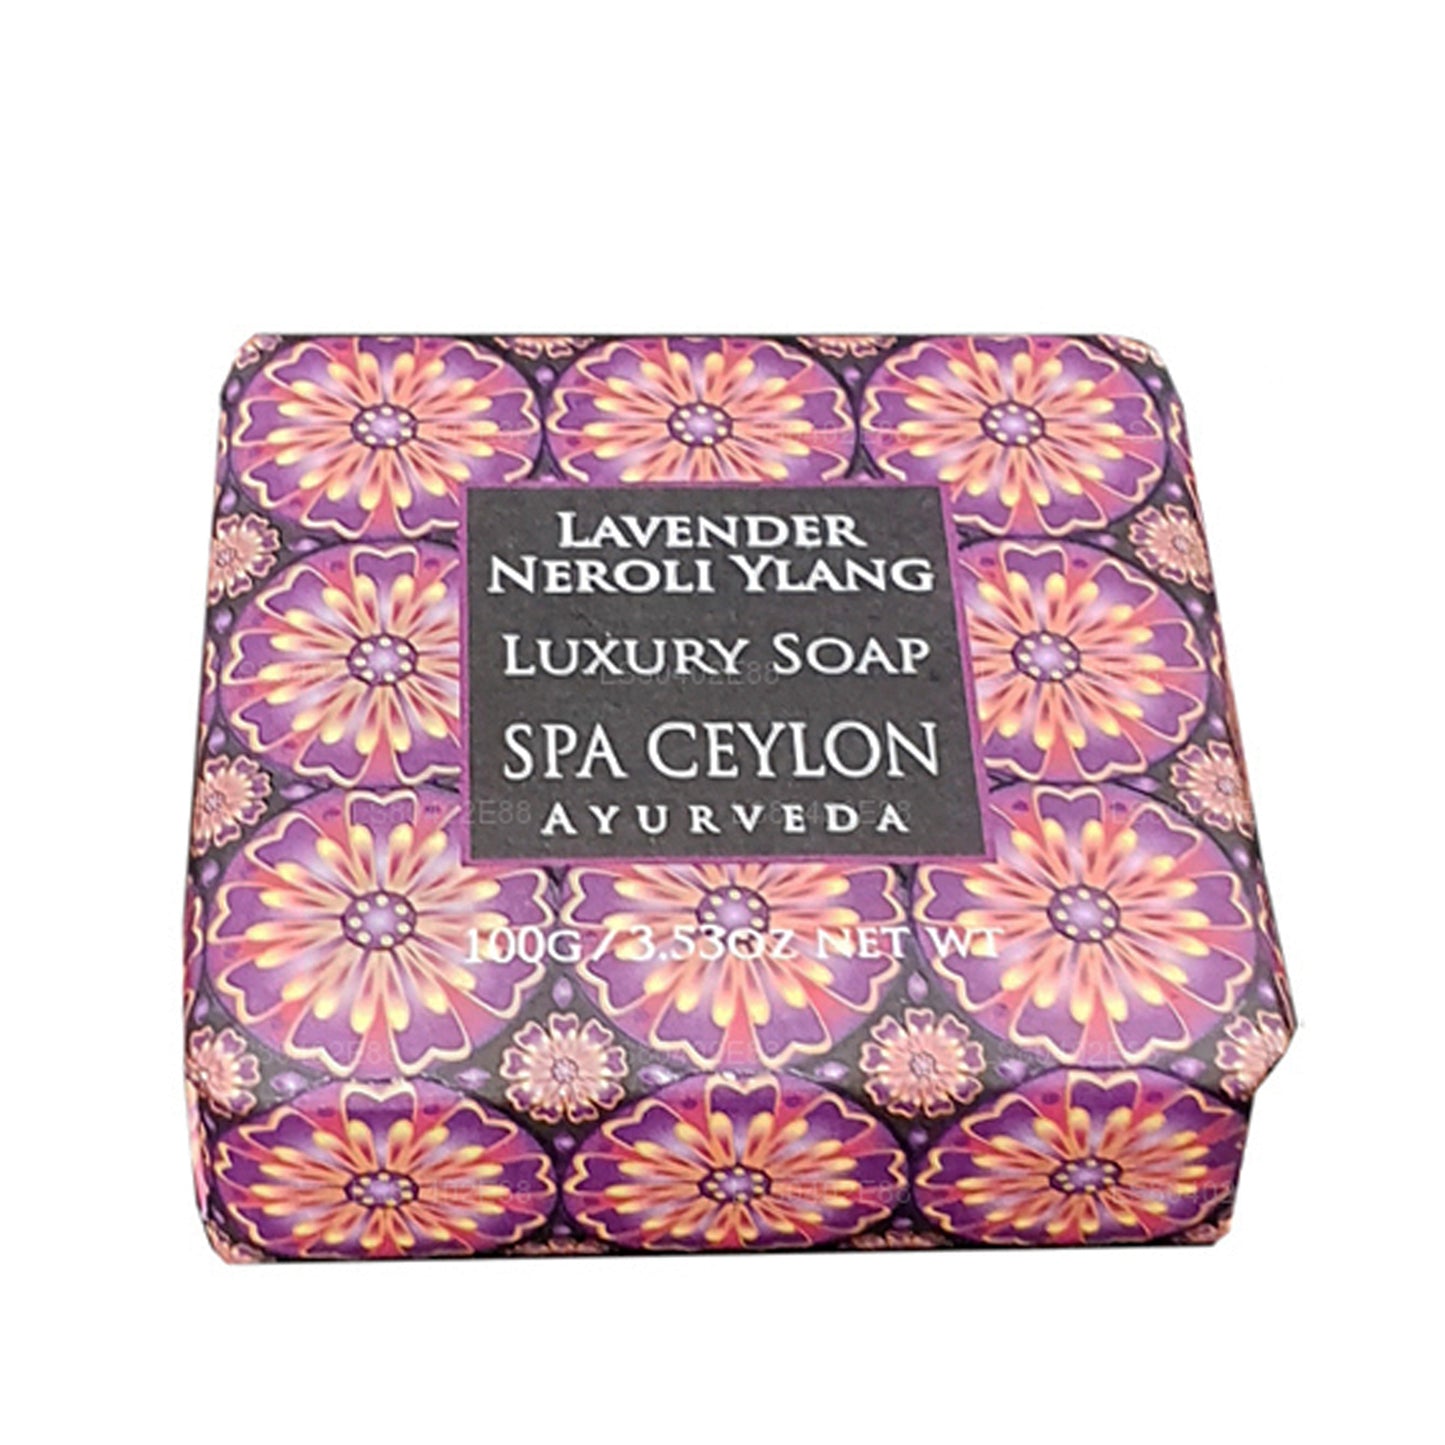 Spa Ceylon Lavender Neroli Ylang Luxury Soap (100g)